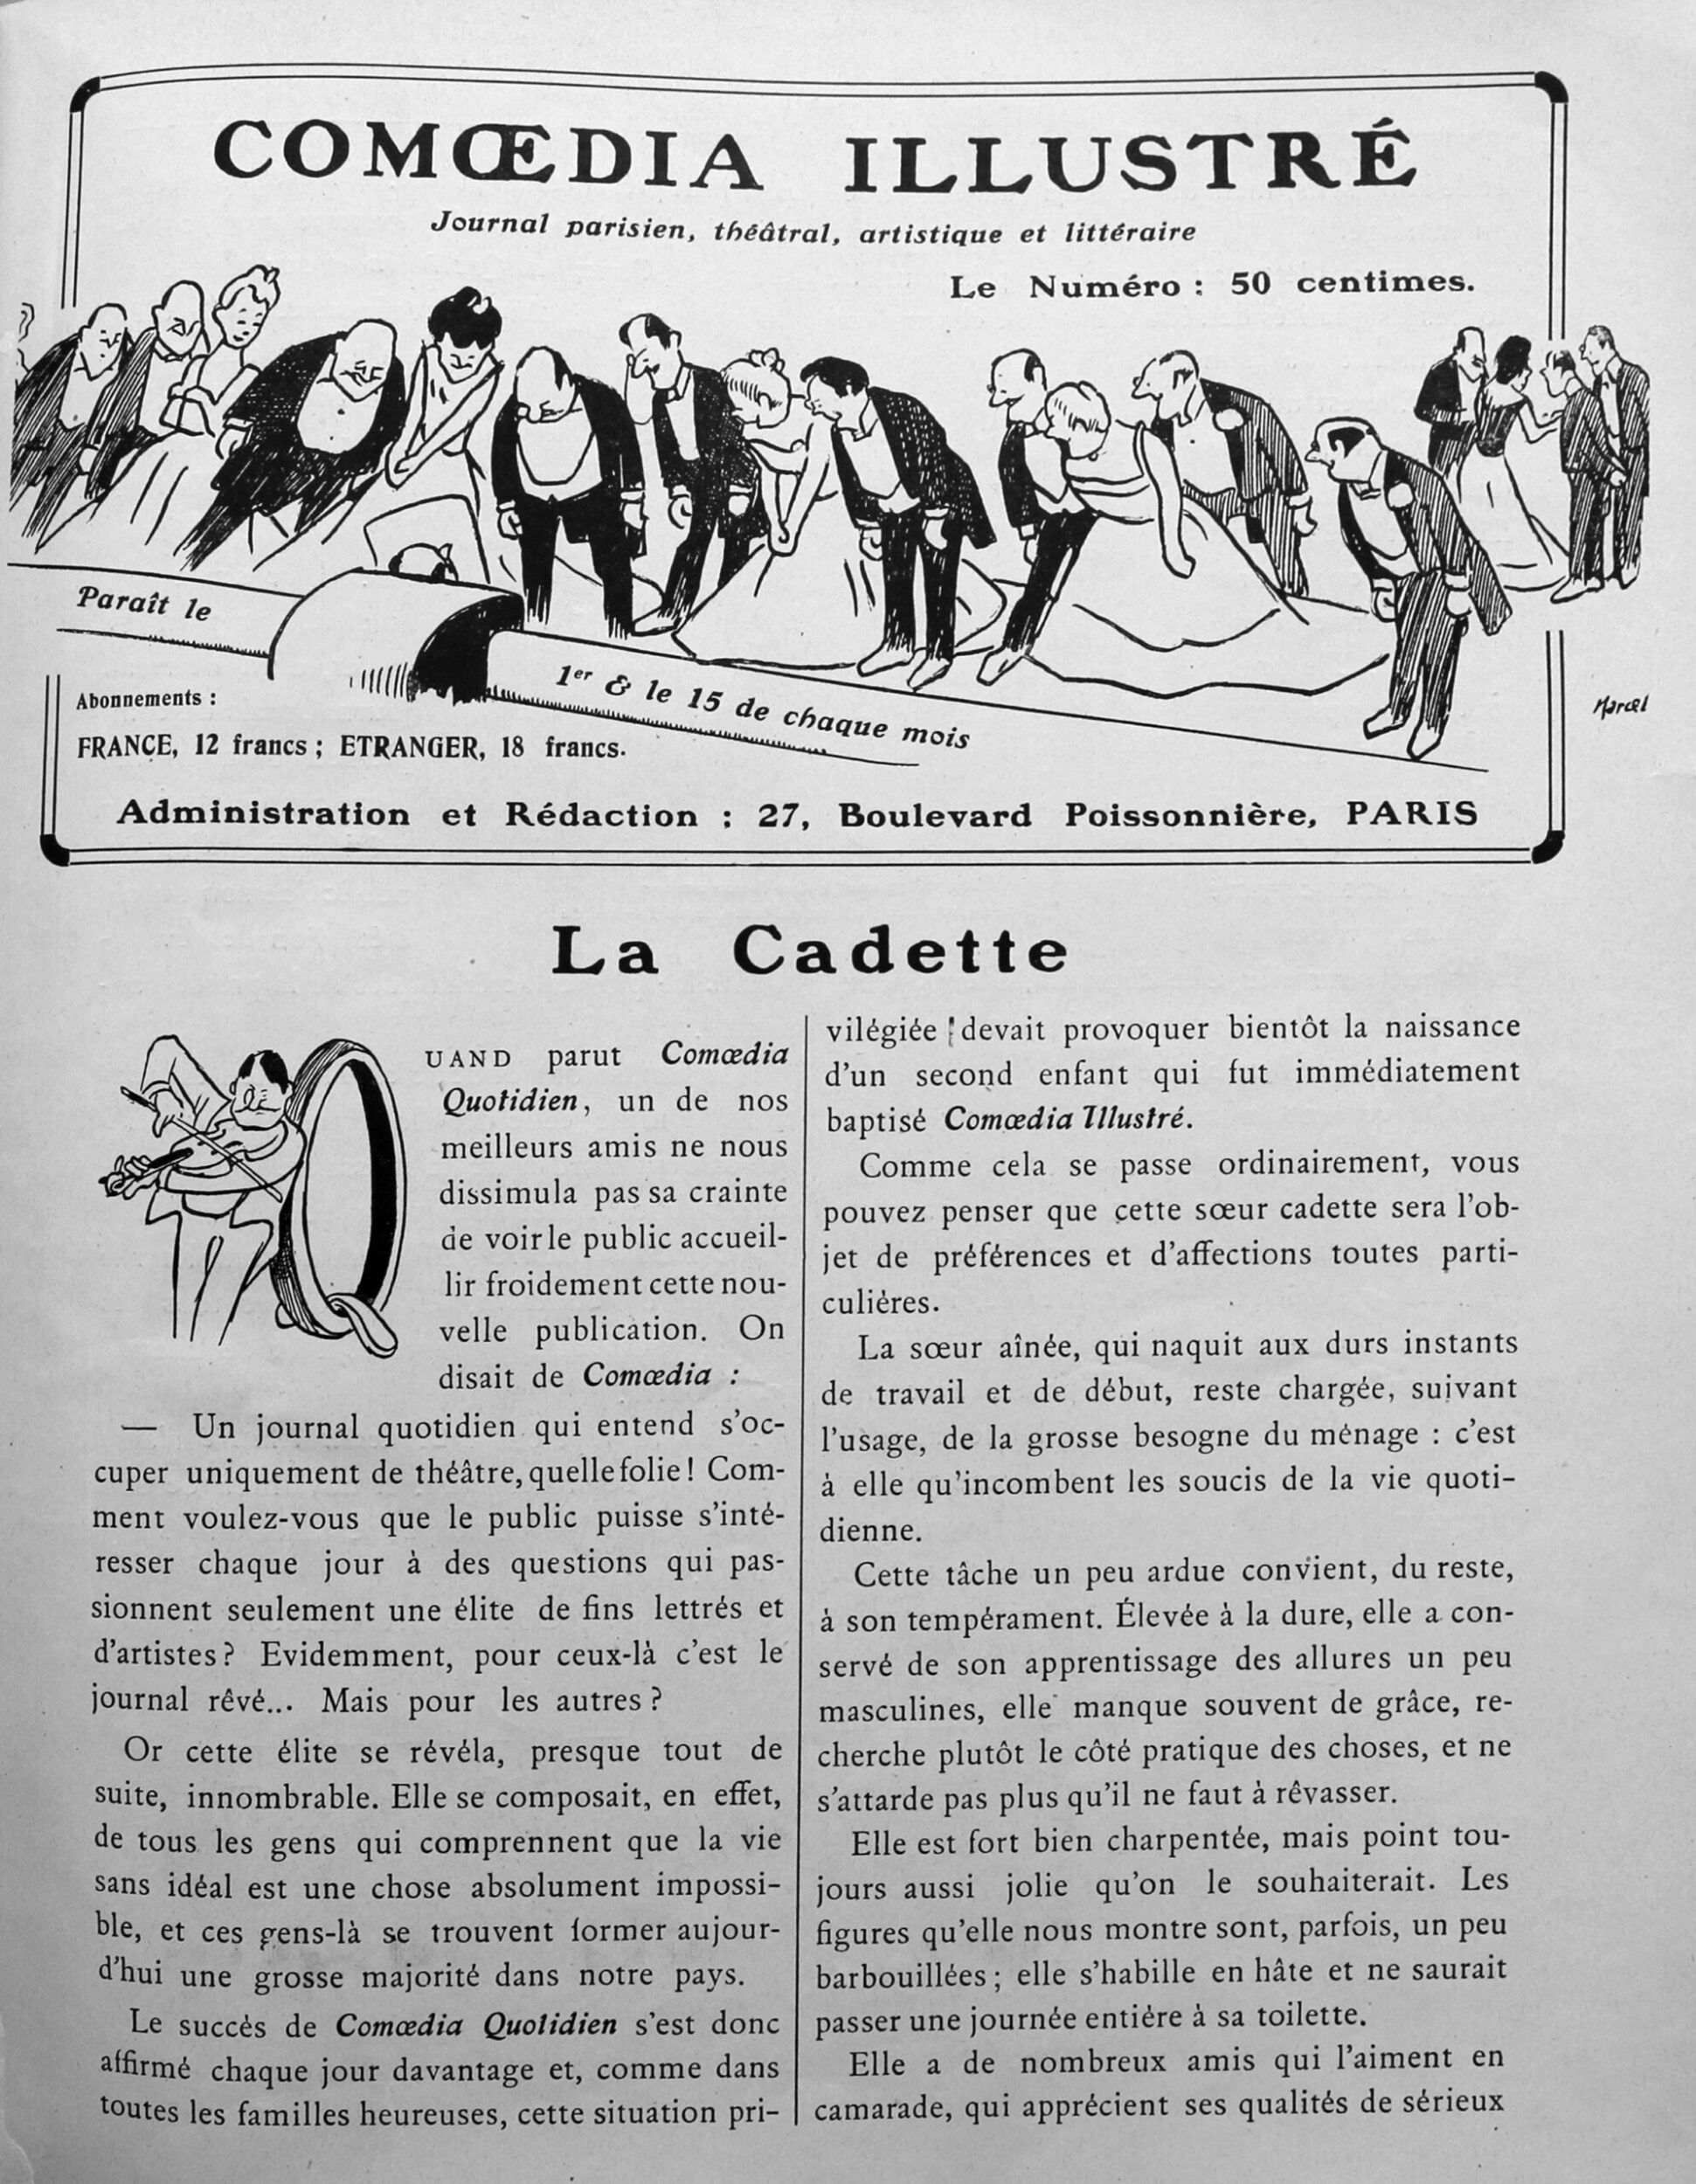 "La cadette", Comoedia illustré, 15 décembre 1908, p.1 et 2.